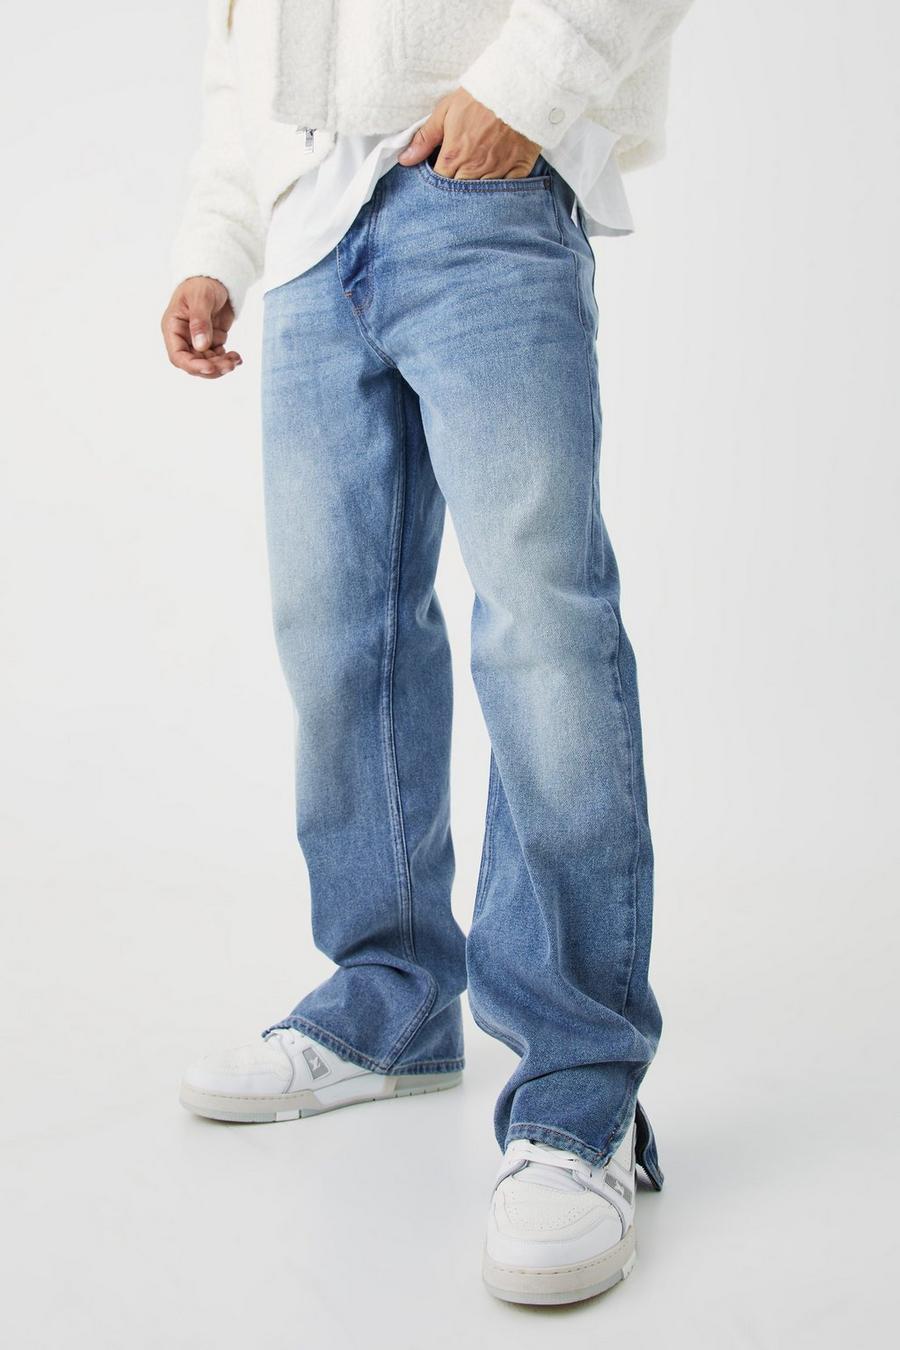 Jean ample zippé, Antique blue